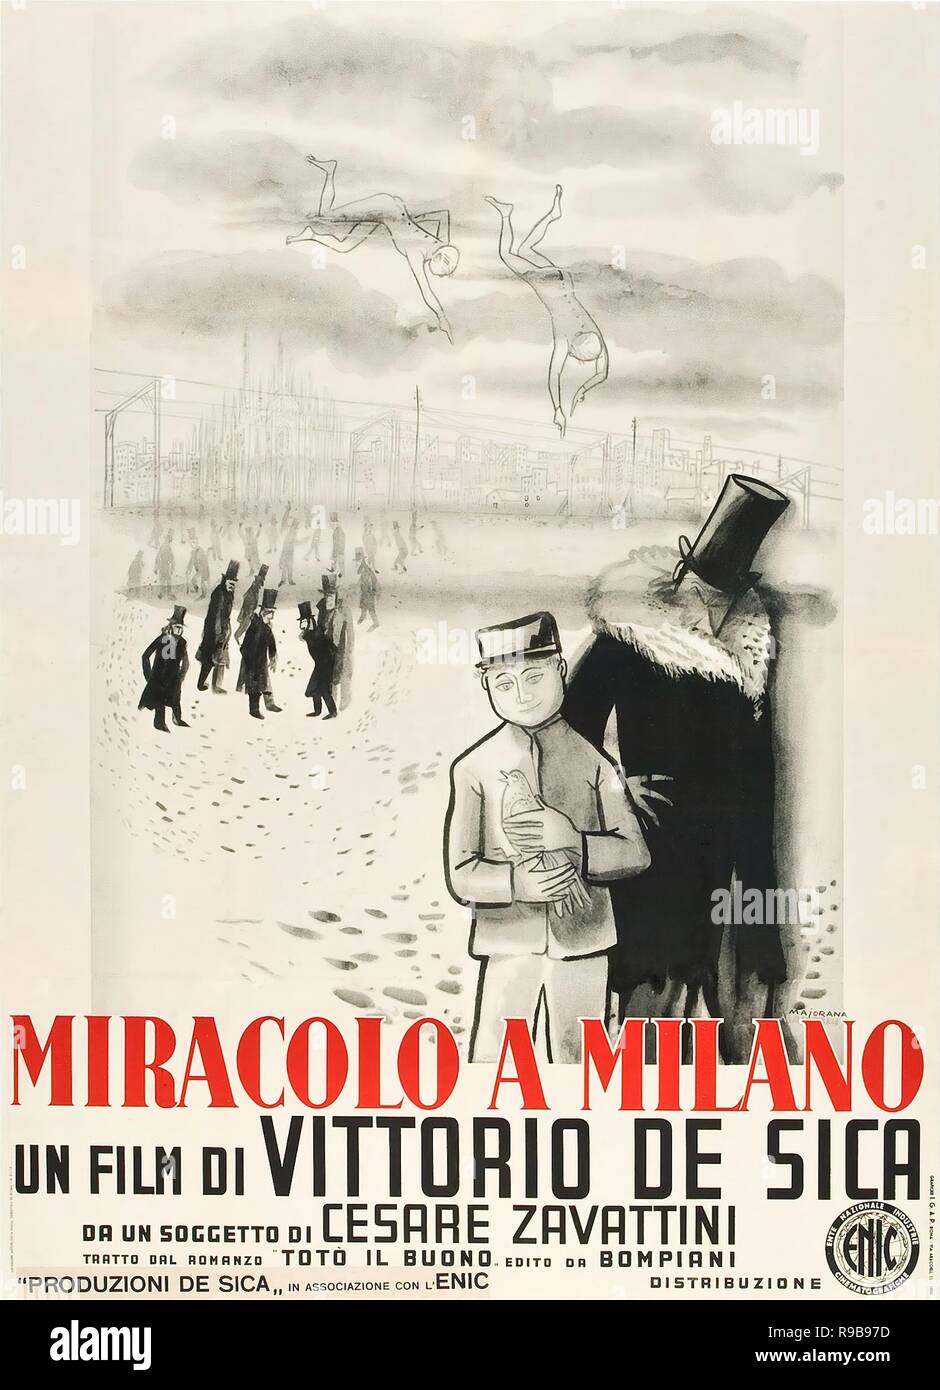 Original film title: MIRACOLO A MILANO. English title: MIRACLE IN MILAN.  Year: 1950. Director: VITTORIO DE SICA. Credit: PRODUZIONI DE SICA / Album  Stock Photo - Alamy